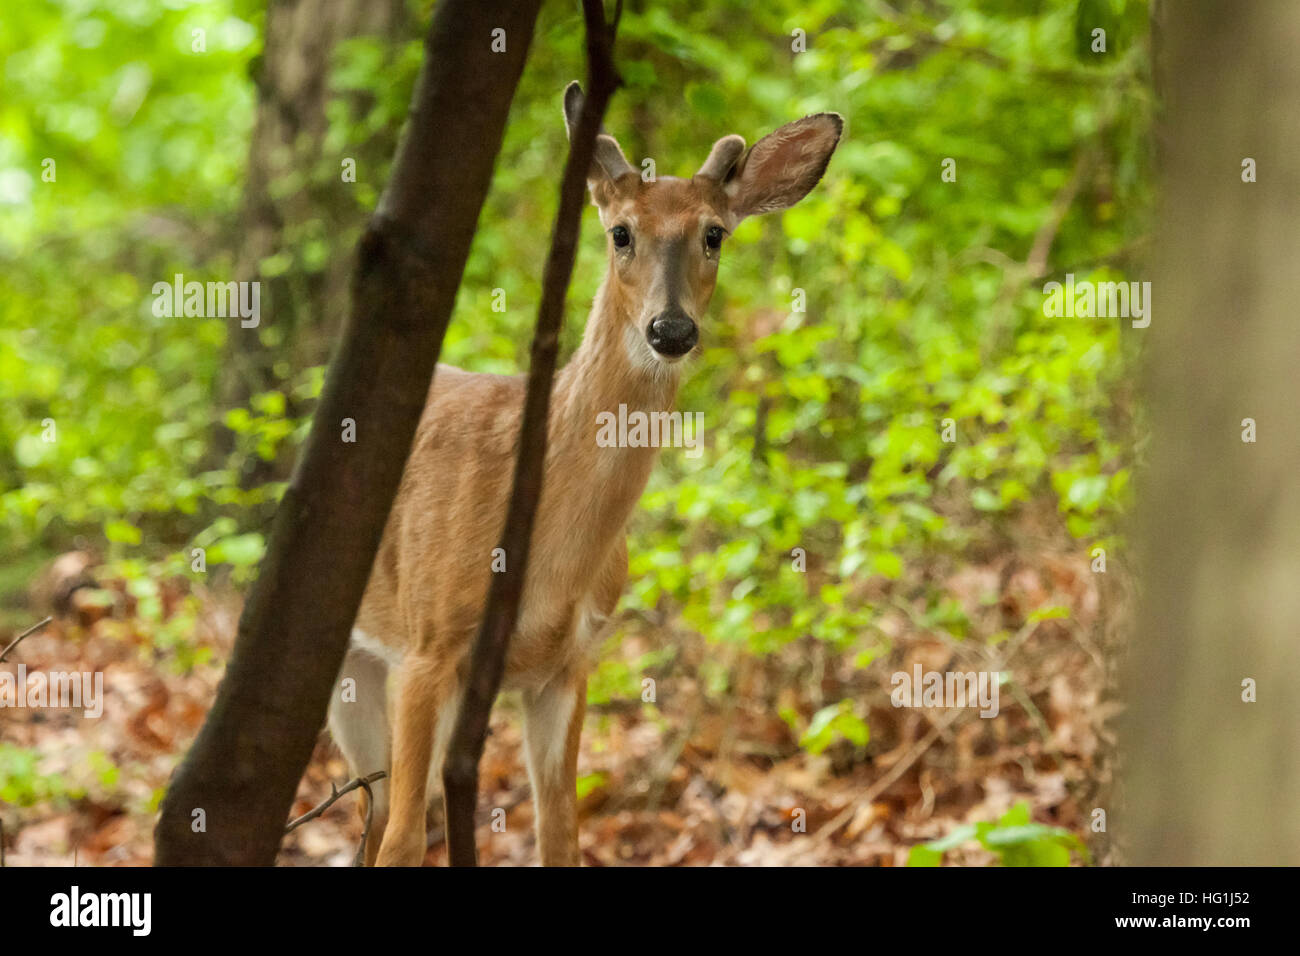 Un hombre joven venado de cola blanca de pie en el bosque. Sus cuernos están empezando a crecer. Foto de stock